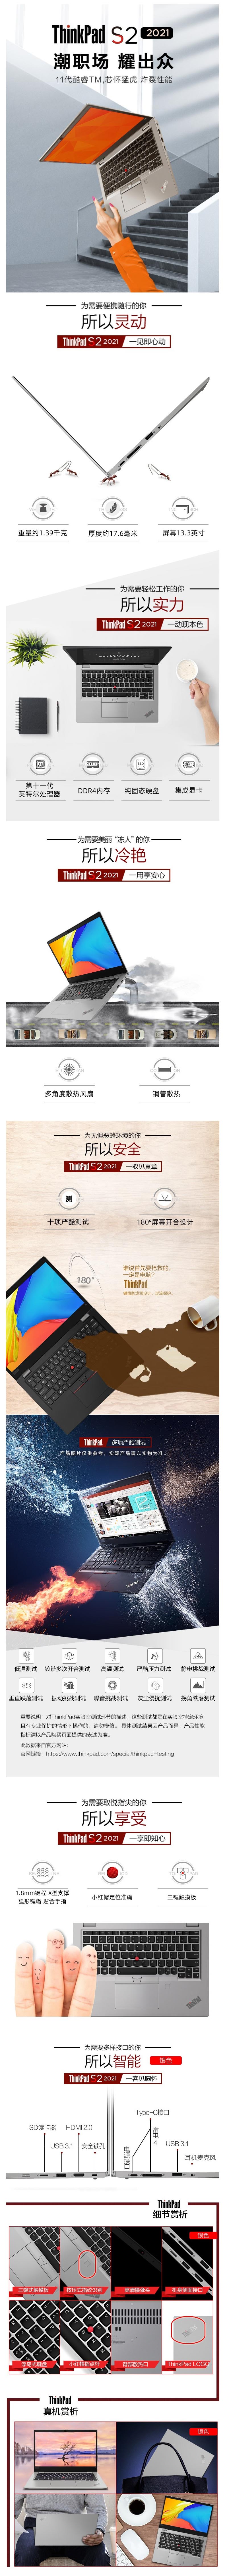 ThinkPad S2 1.jpg